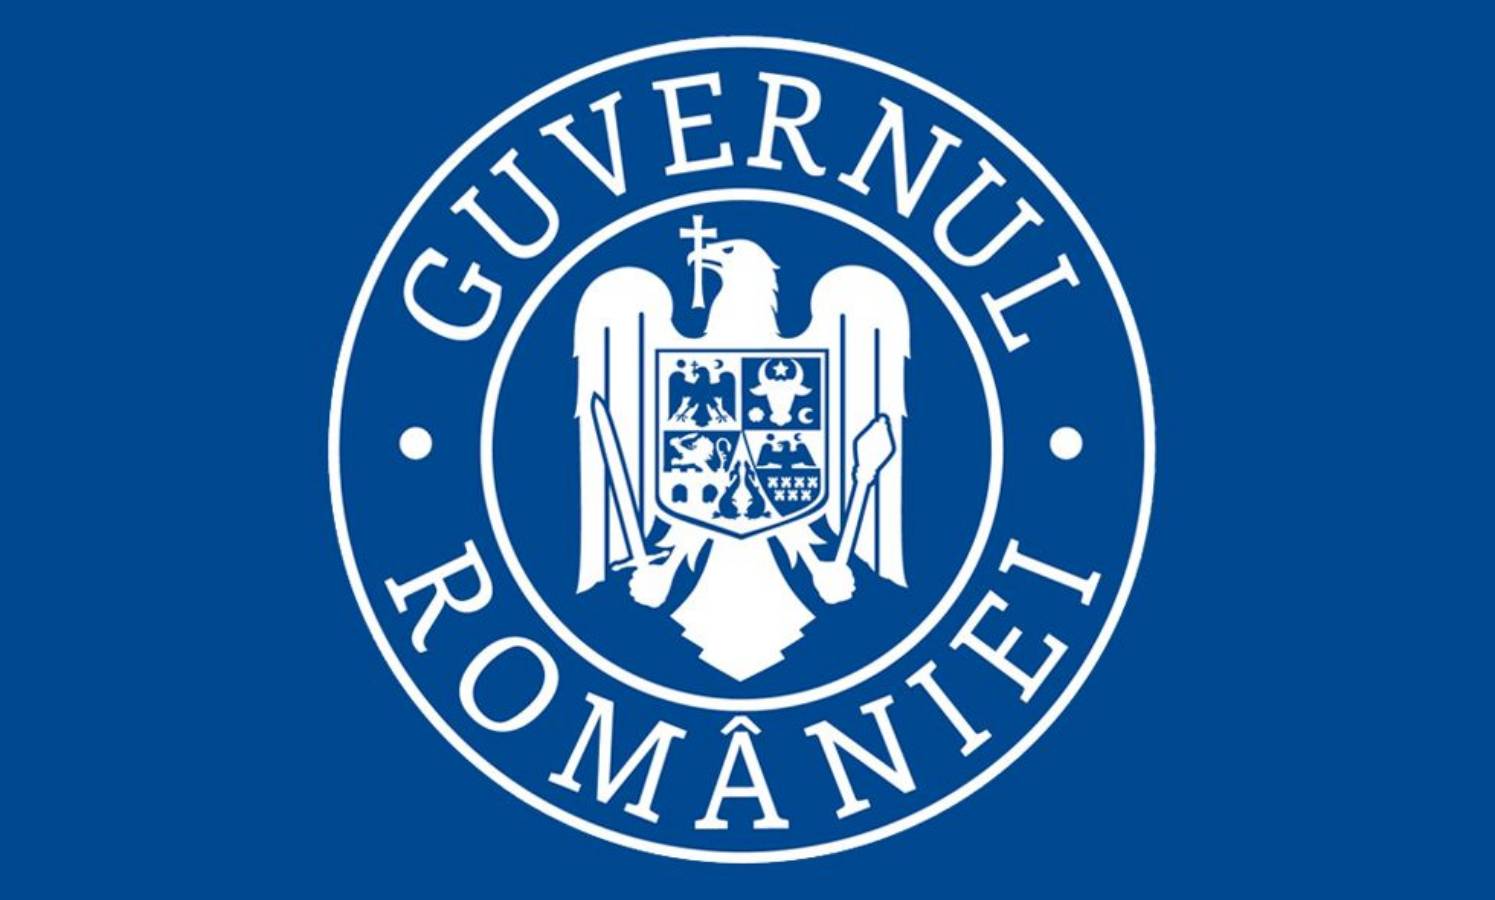 Rząd Rumunii Odpowiedzi na pytania dotyczące podróży Wielkanoc